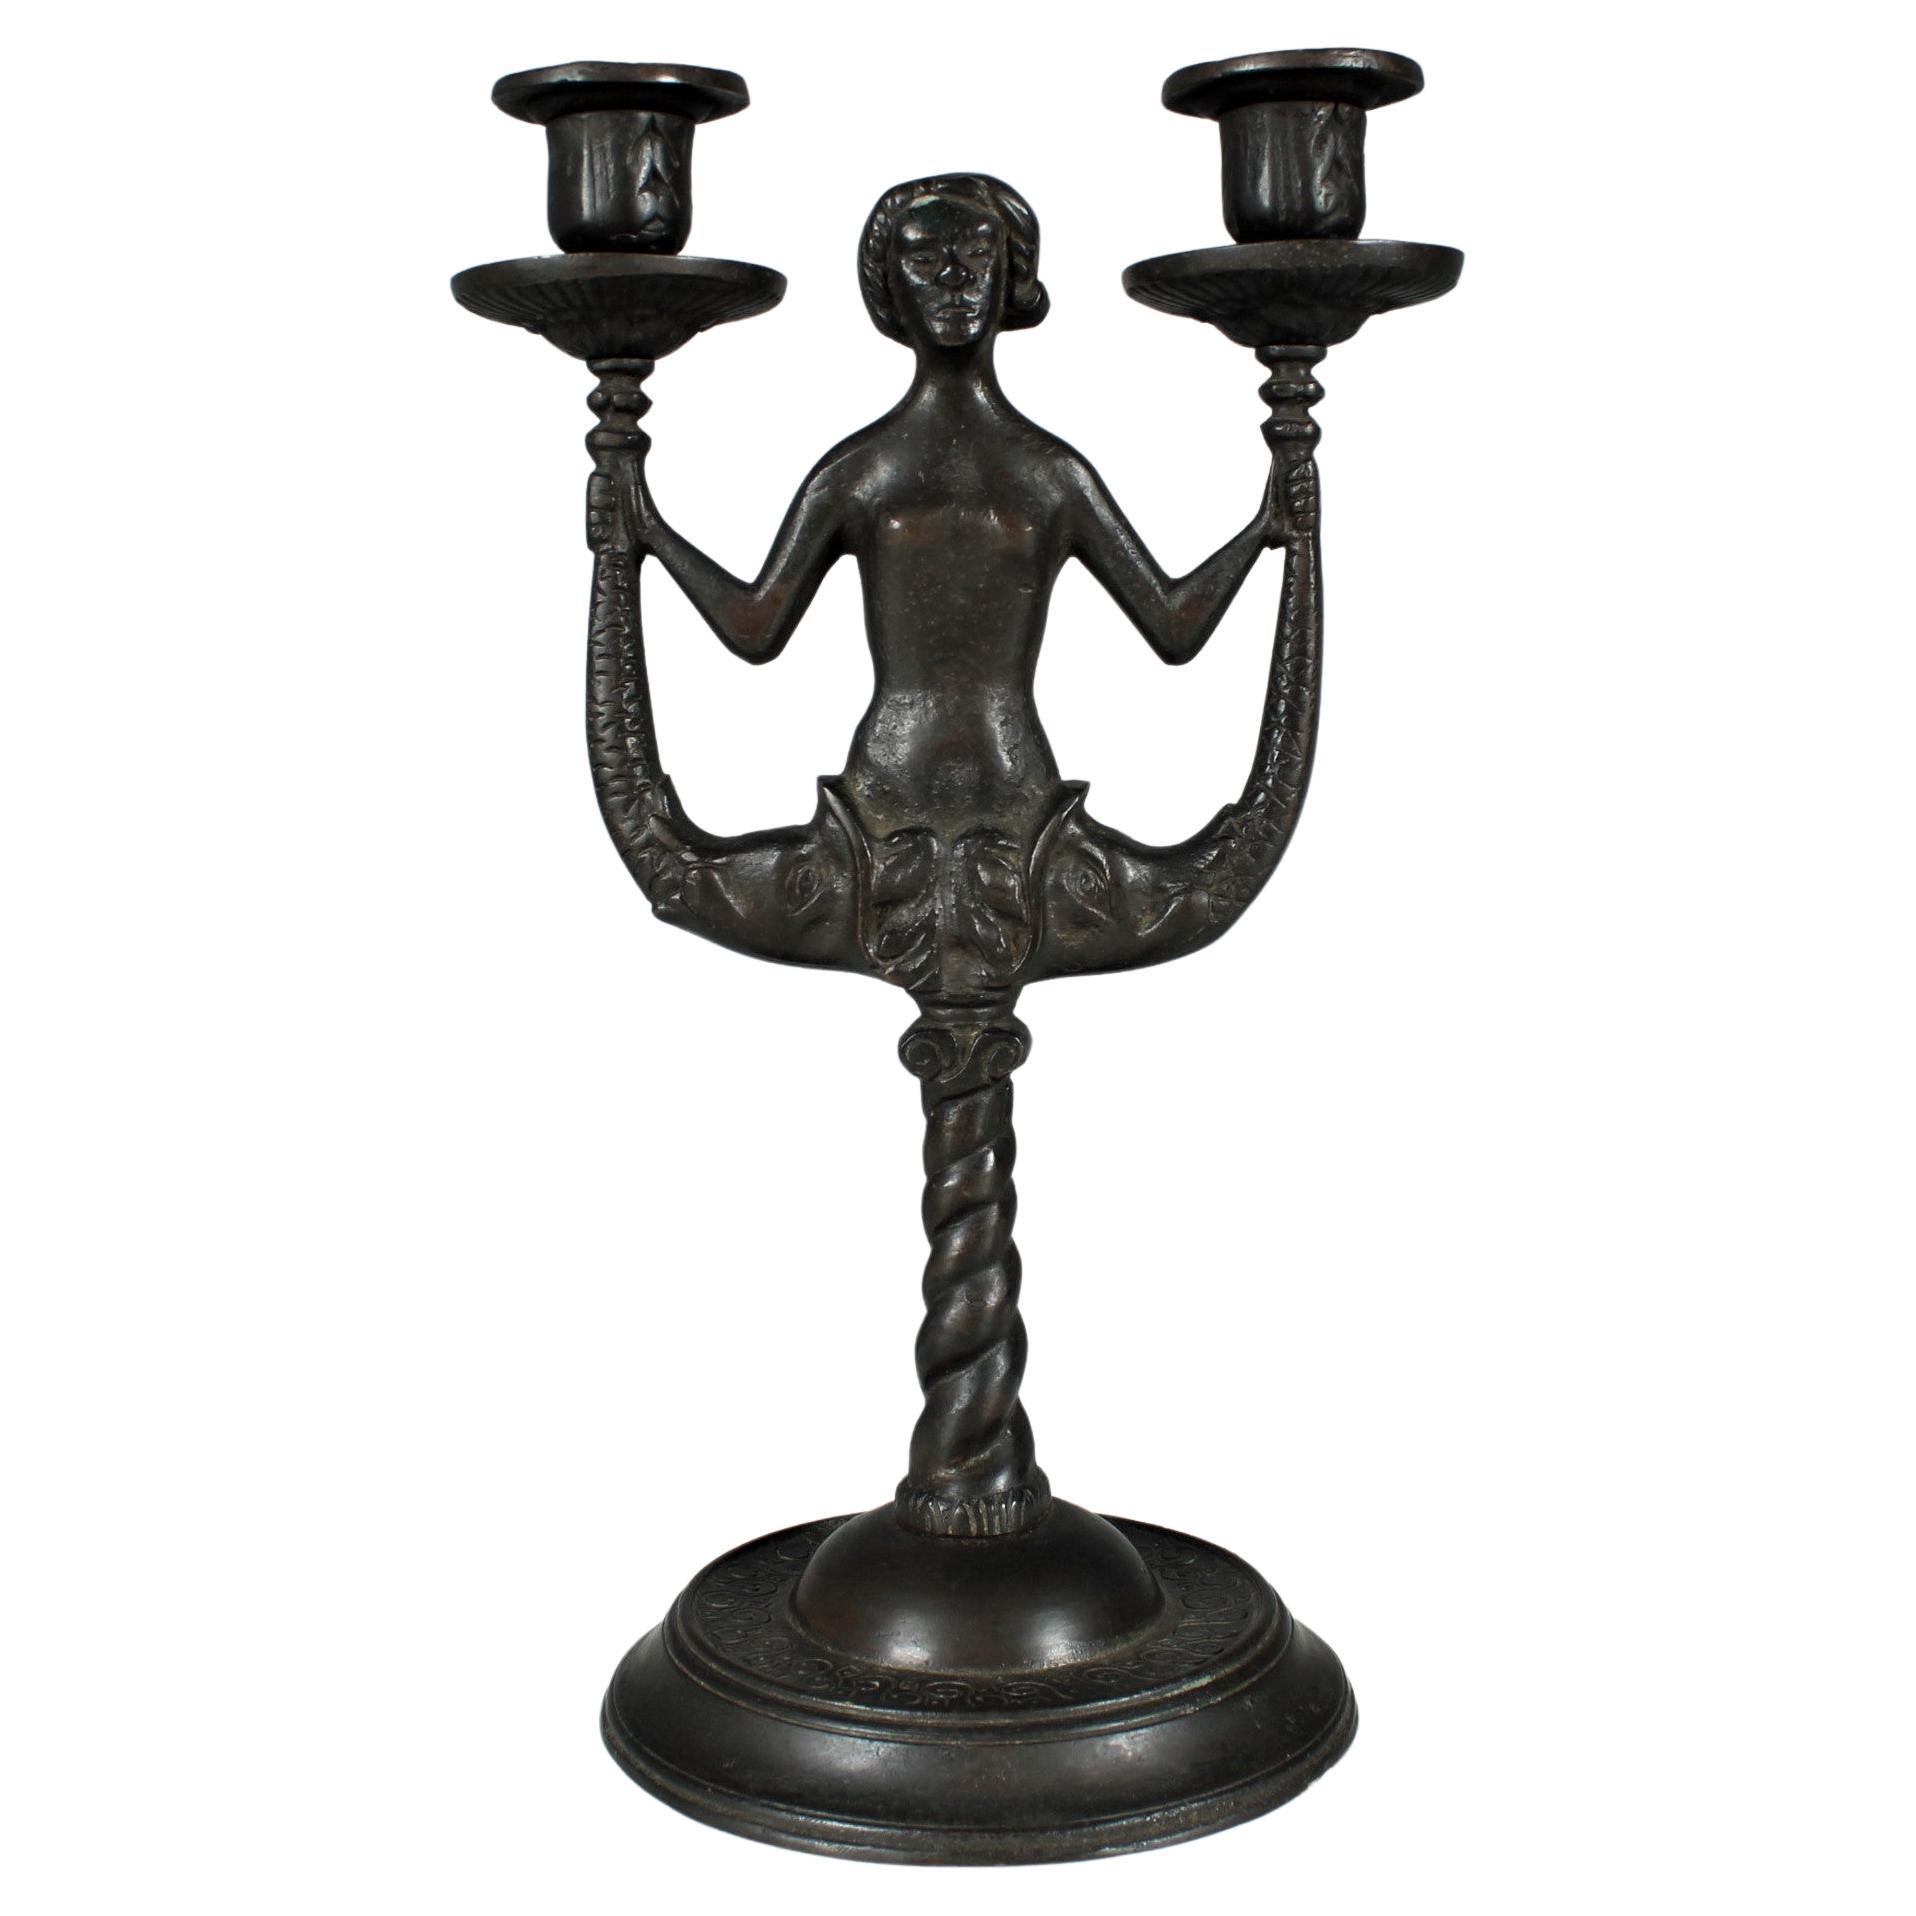 Antique Candlestick, Candle Holder, Bronze Patinated, Art Nouveau, Art Deco